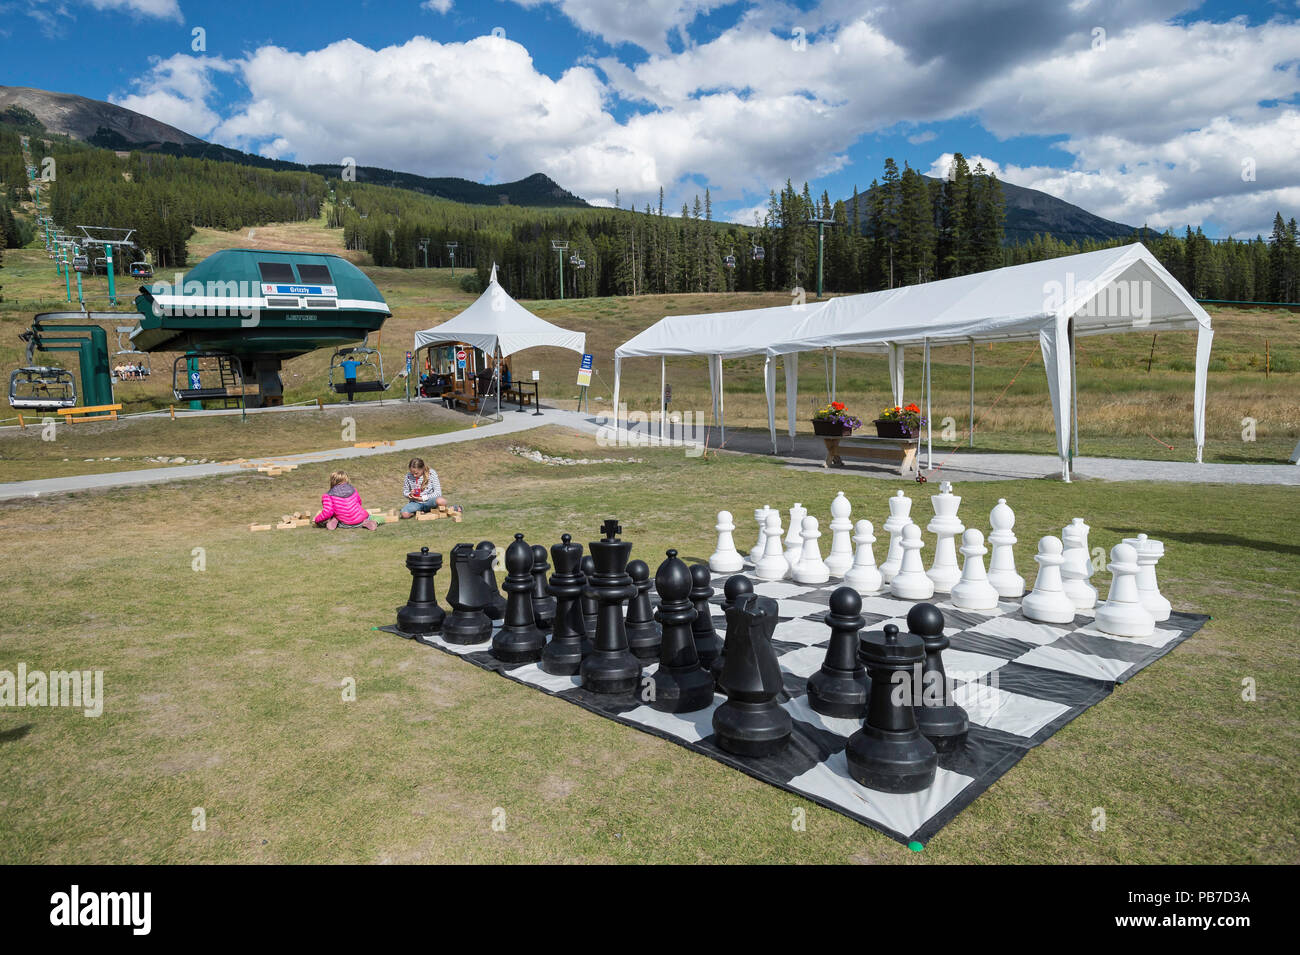 Grand jeu d'échecs, station de ski de Lake Louise, Lake Louise, Banff National Park, Alberta, Canada Banque D'Images